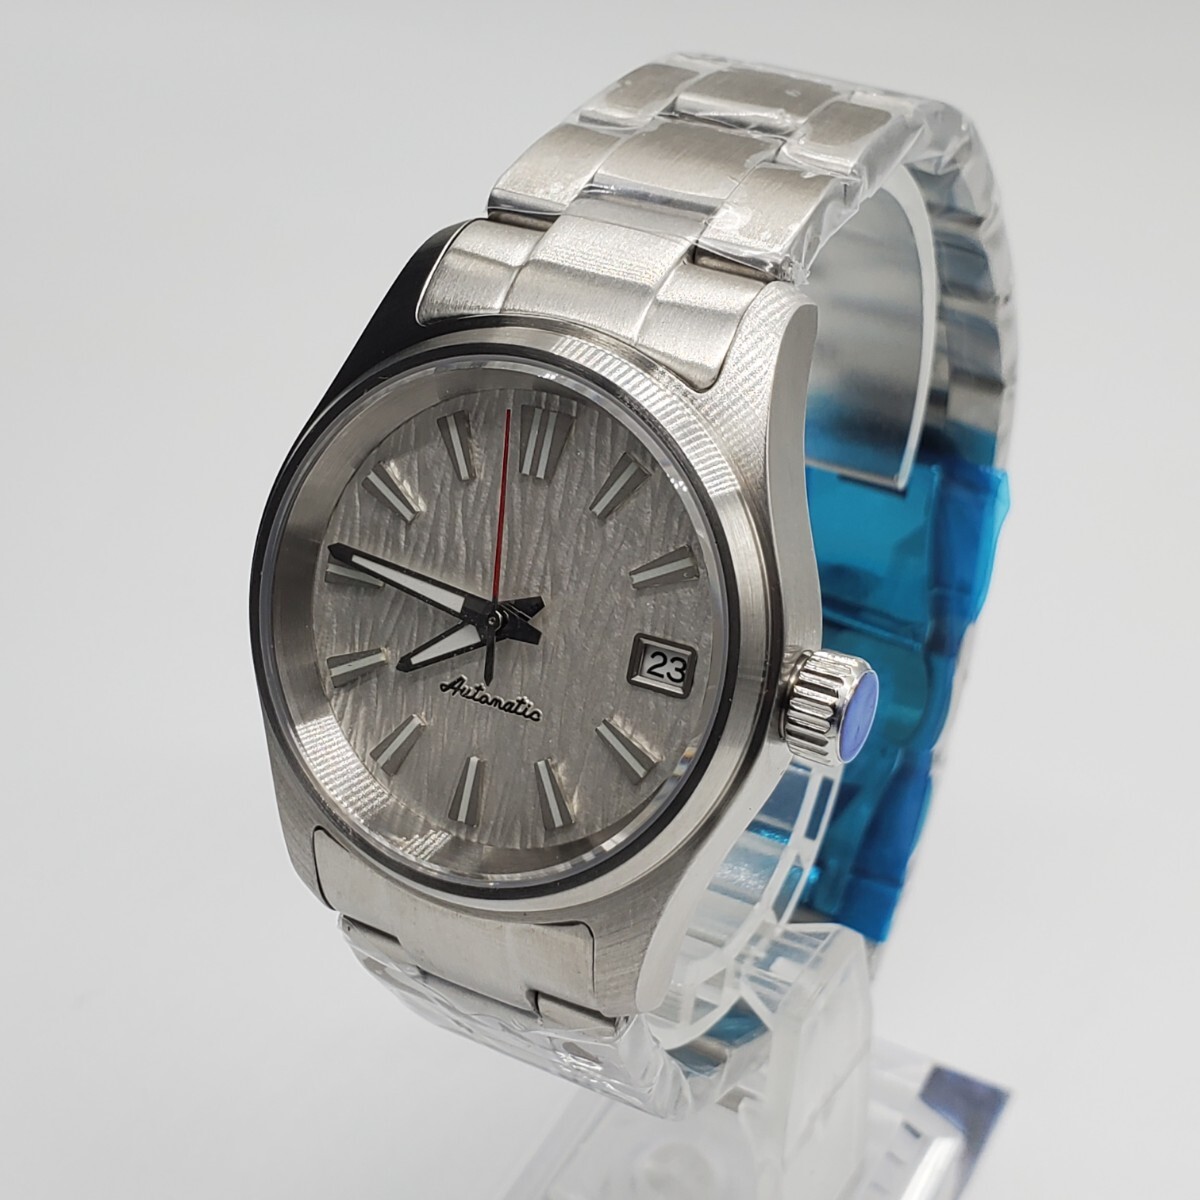  новый товар самозаводящиеся часы Tandoriono- Logo белый циферблат NH35 мужские наручные часы автоматический высококлассный сапфир защита от ветра 36mm